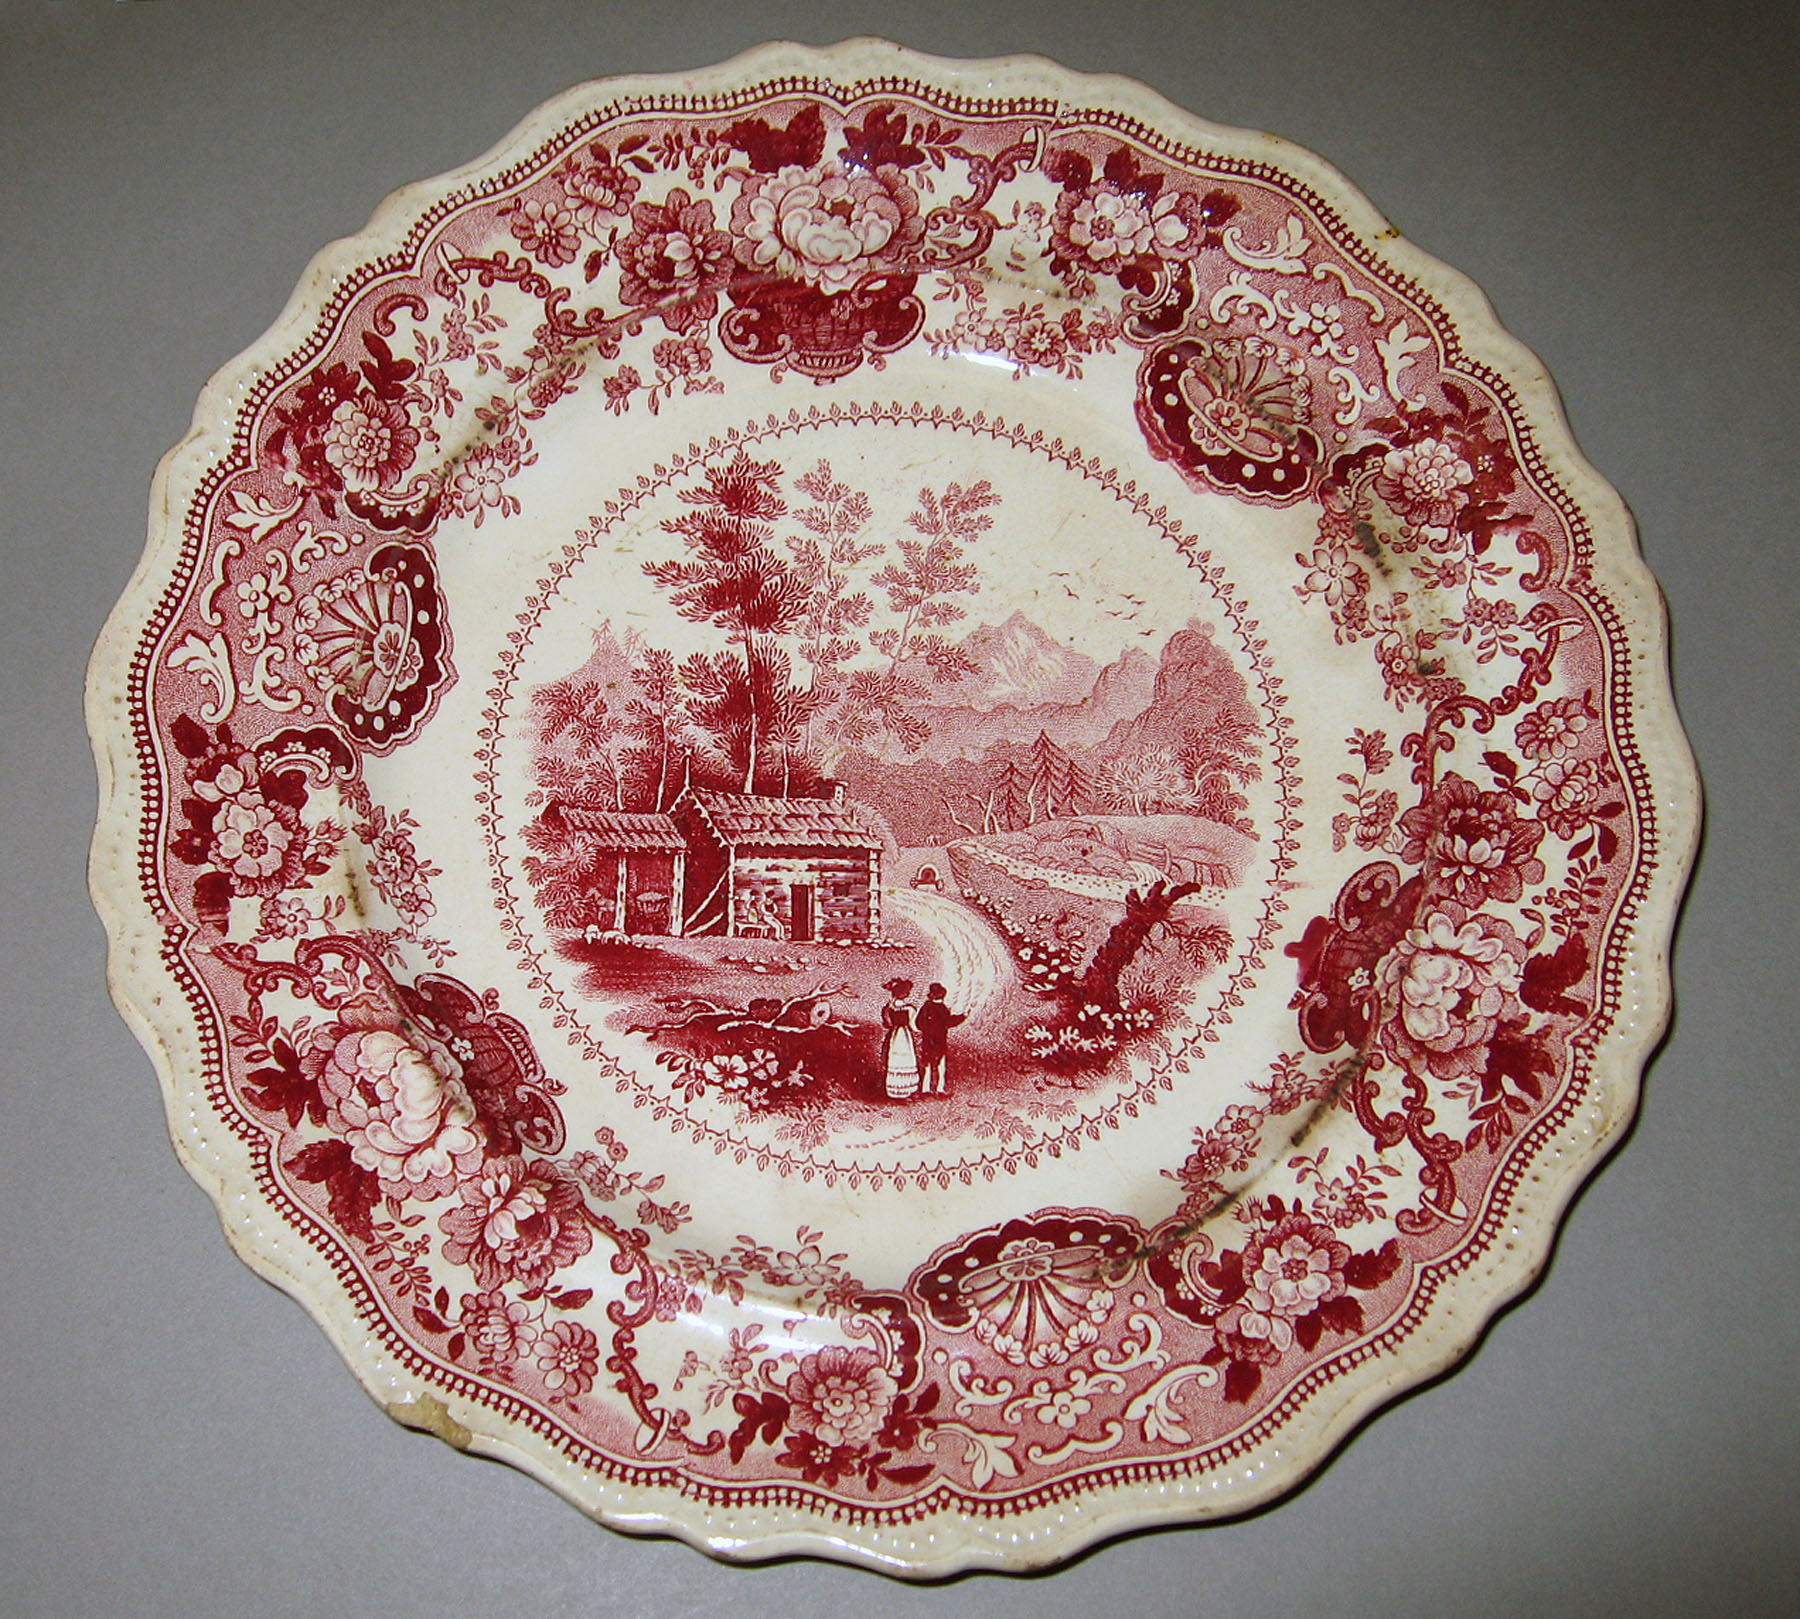 1966.0880.009 Adams earthenware plate